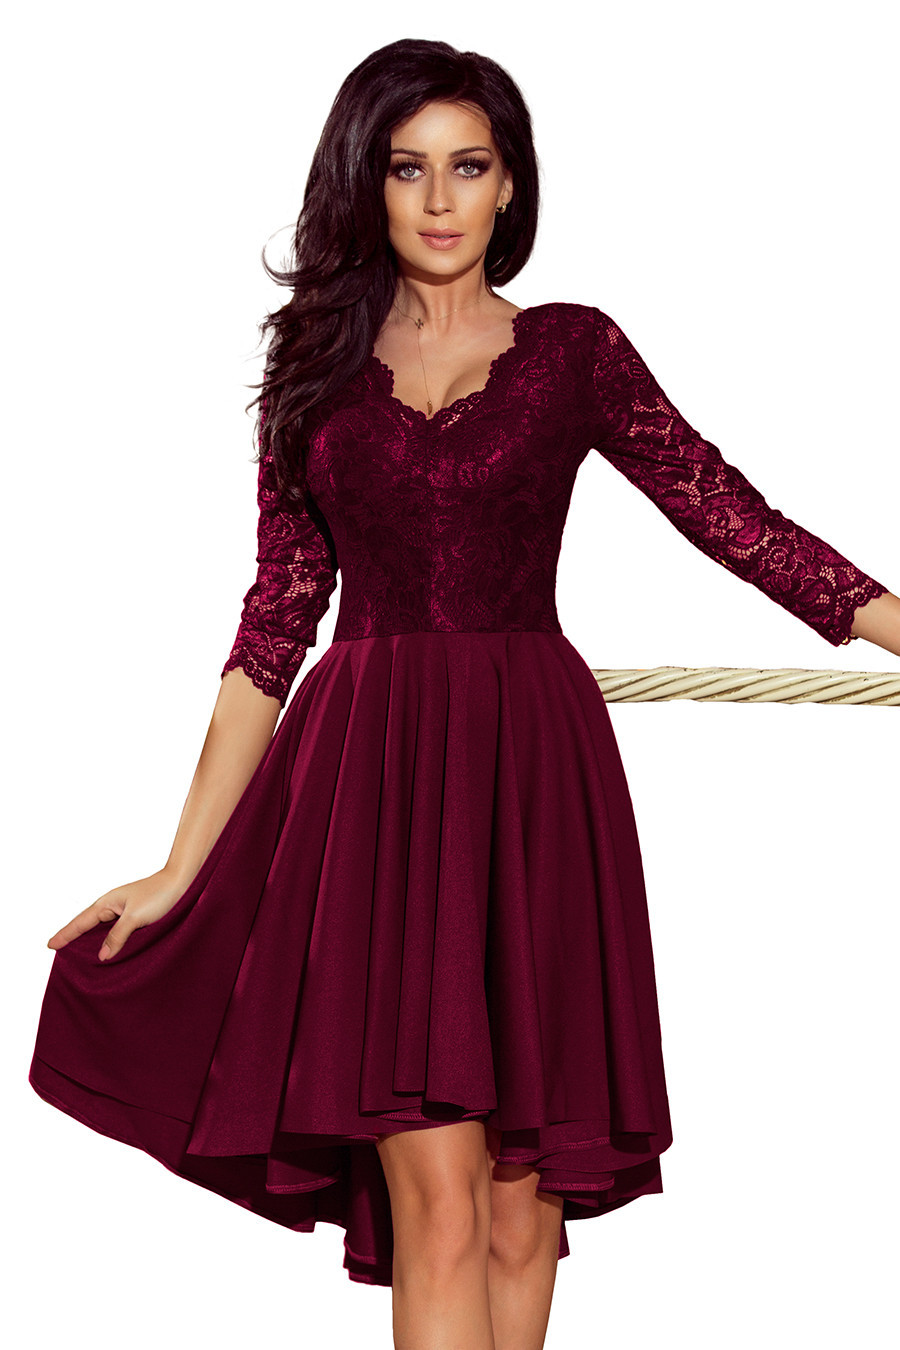 NICOLLE - Dámské šaty ve švestkové barvě s delším zadním dílem a krajkovým výstřihem 210-13 L